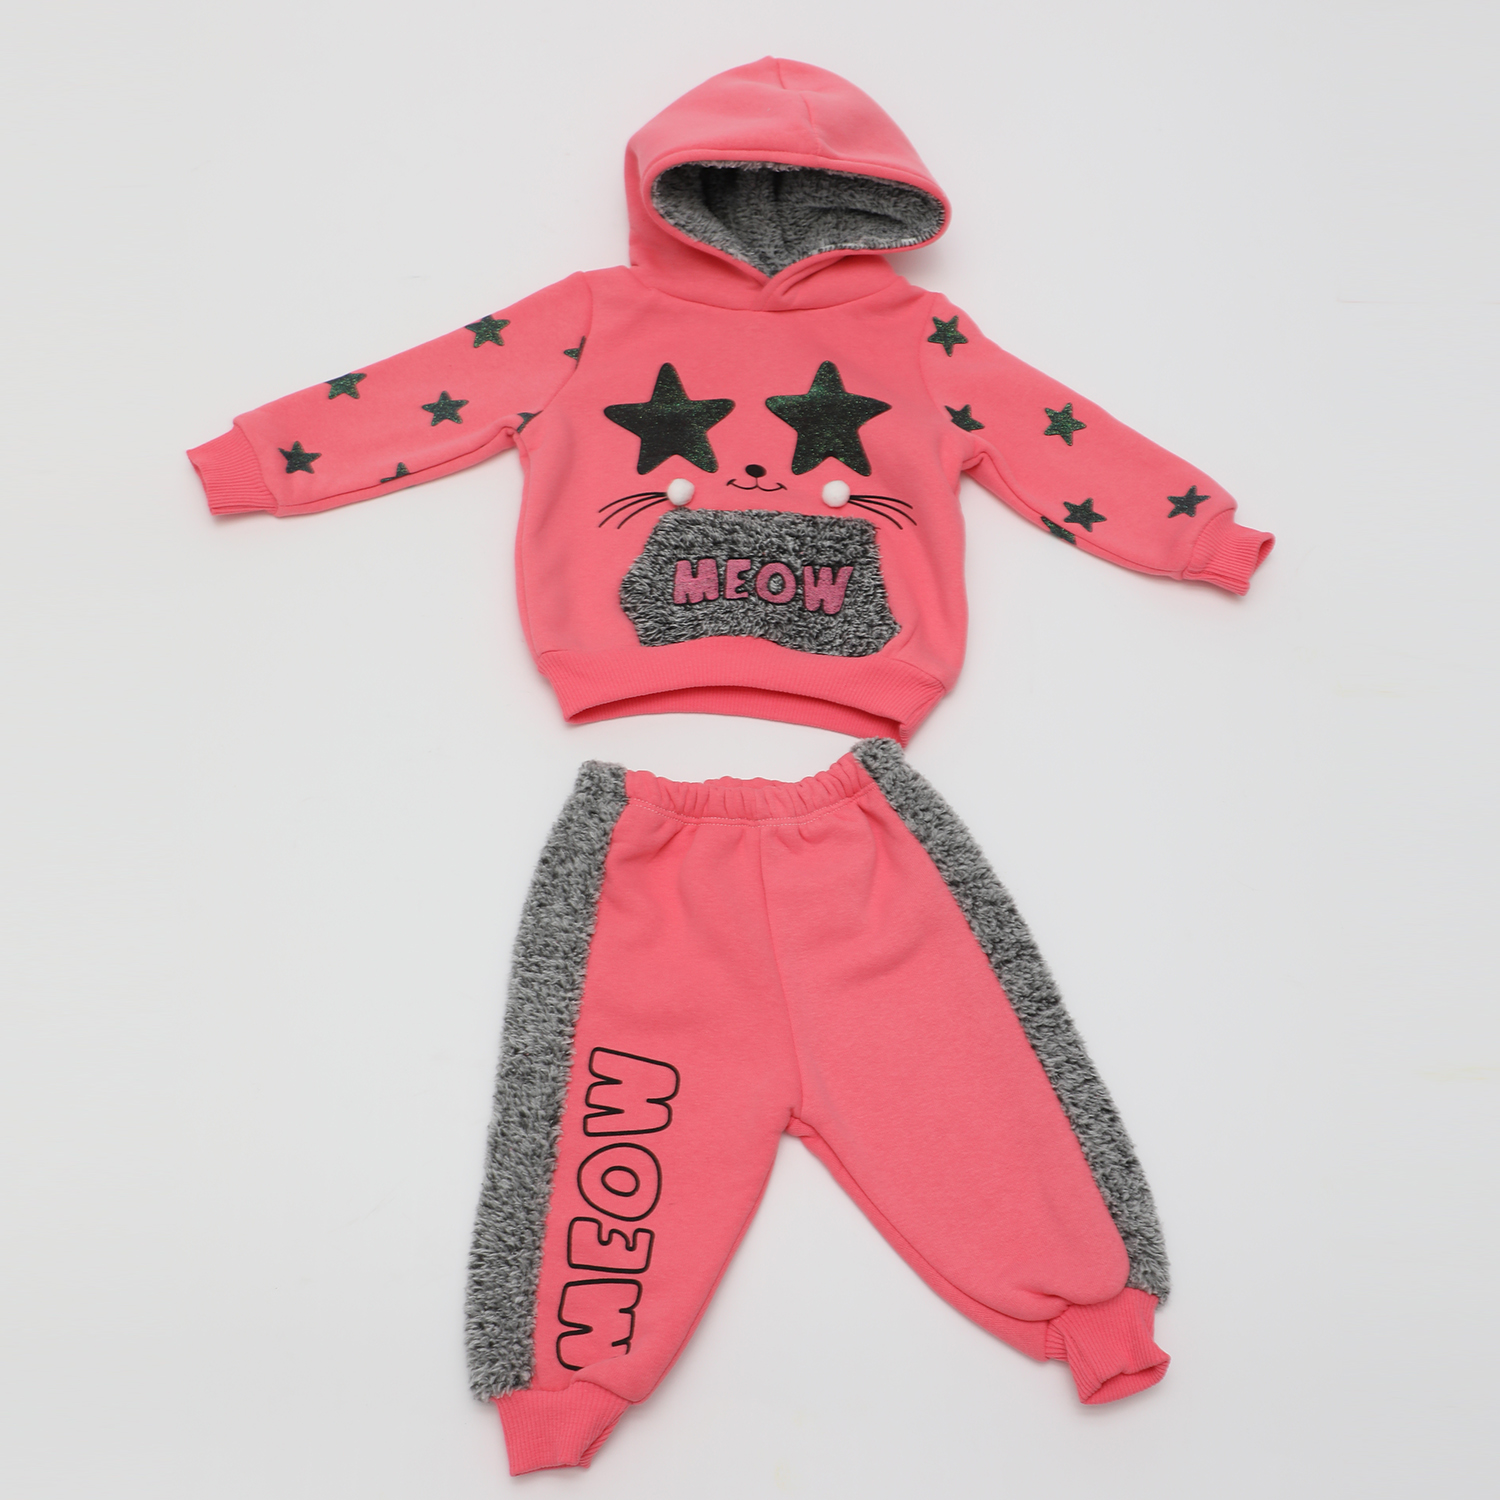 Παιδικά/Baby/Ρούχα/Σετ SAM 0-13 - Βρεφικό σετ φόρμας SAM 0-13 MELOW ροζ γκρι